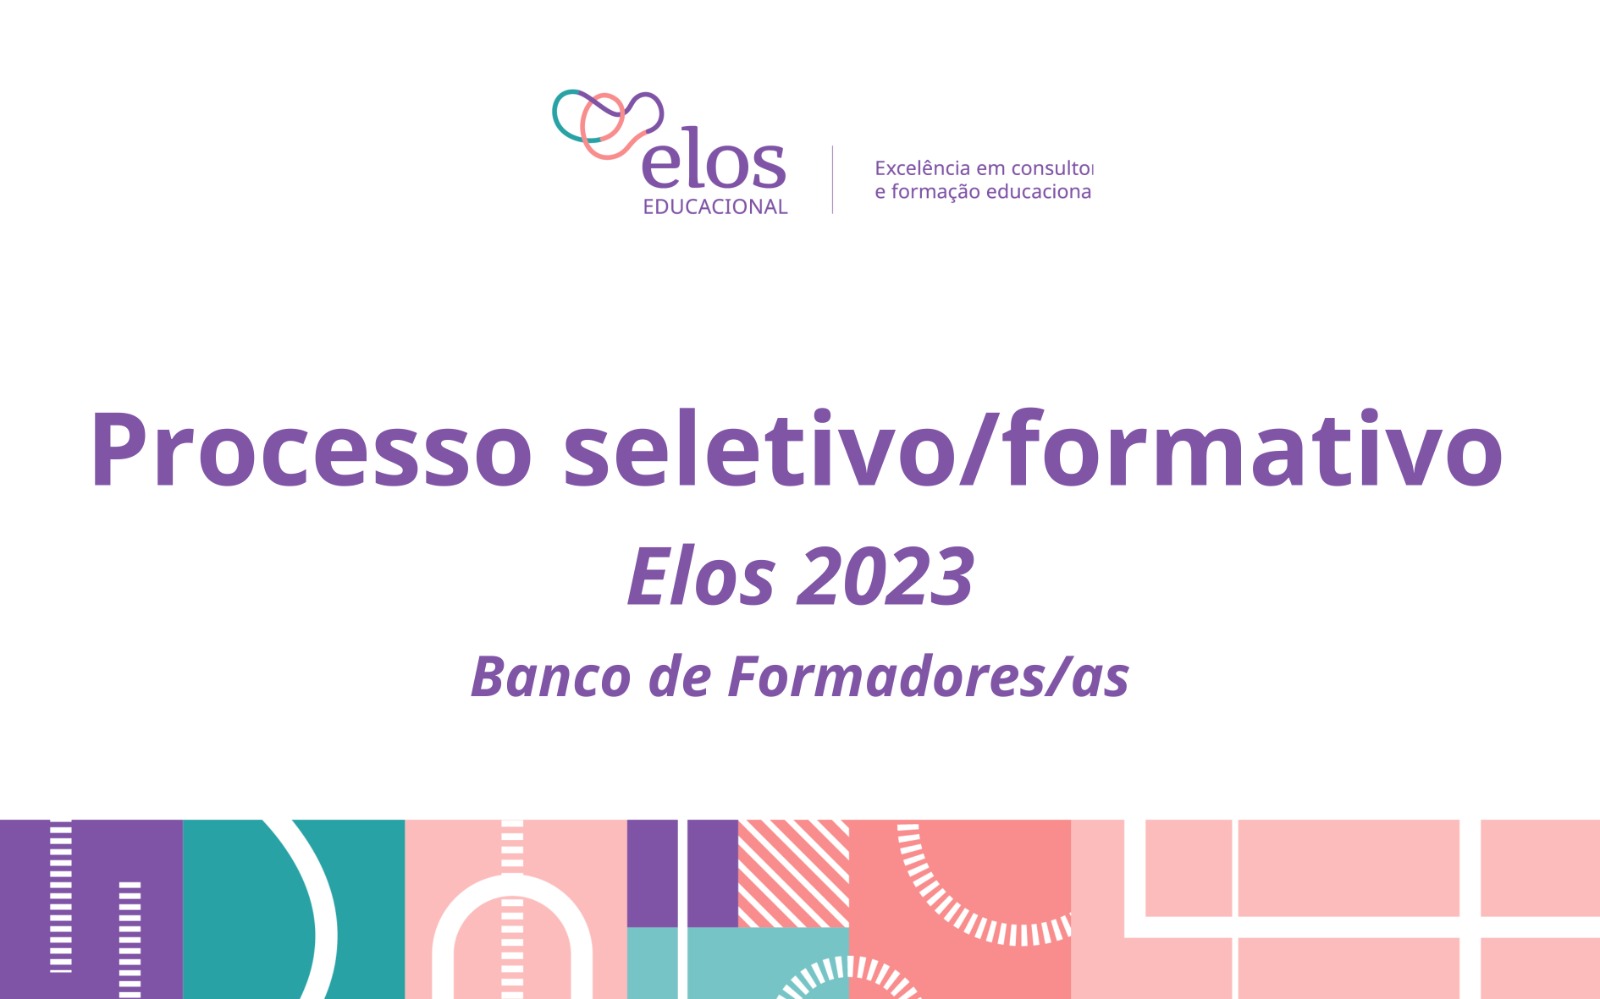 Processo seletivo/formativo - Elos - Banco de profissionais - Fevereiro